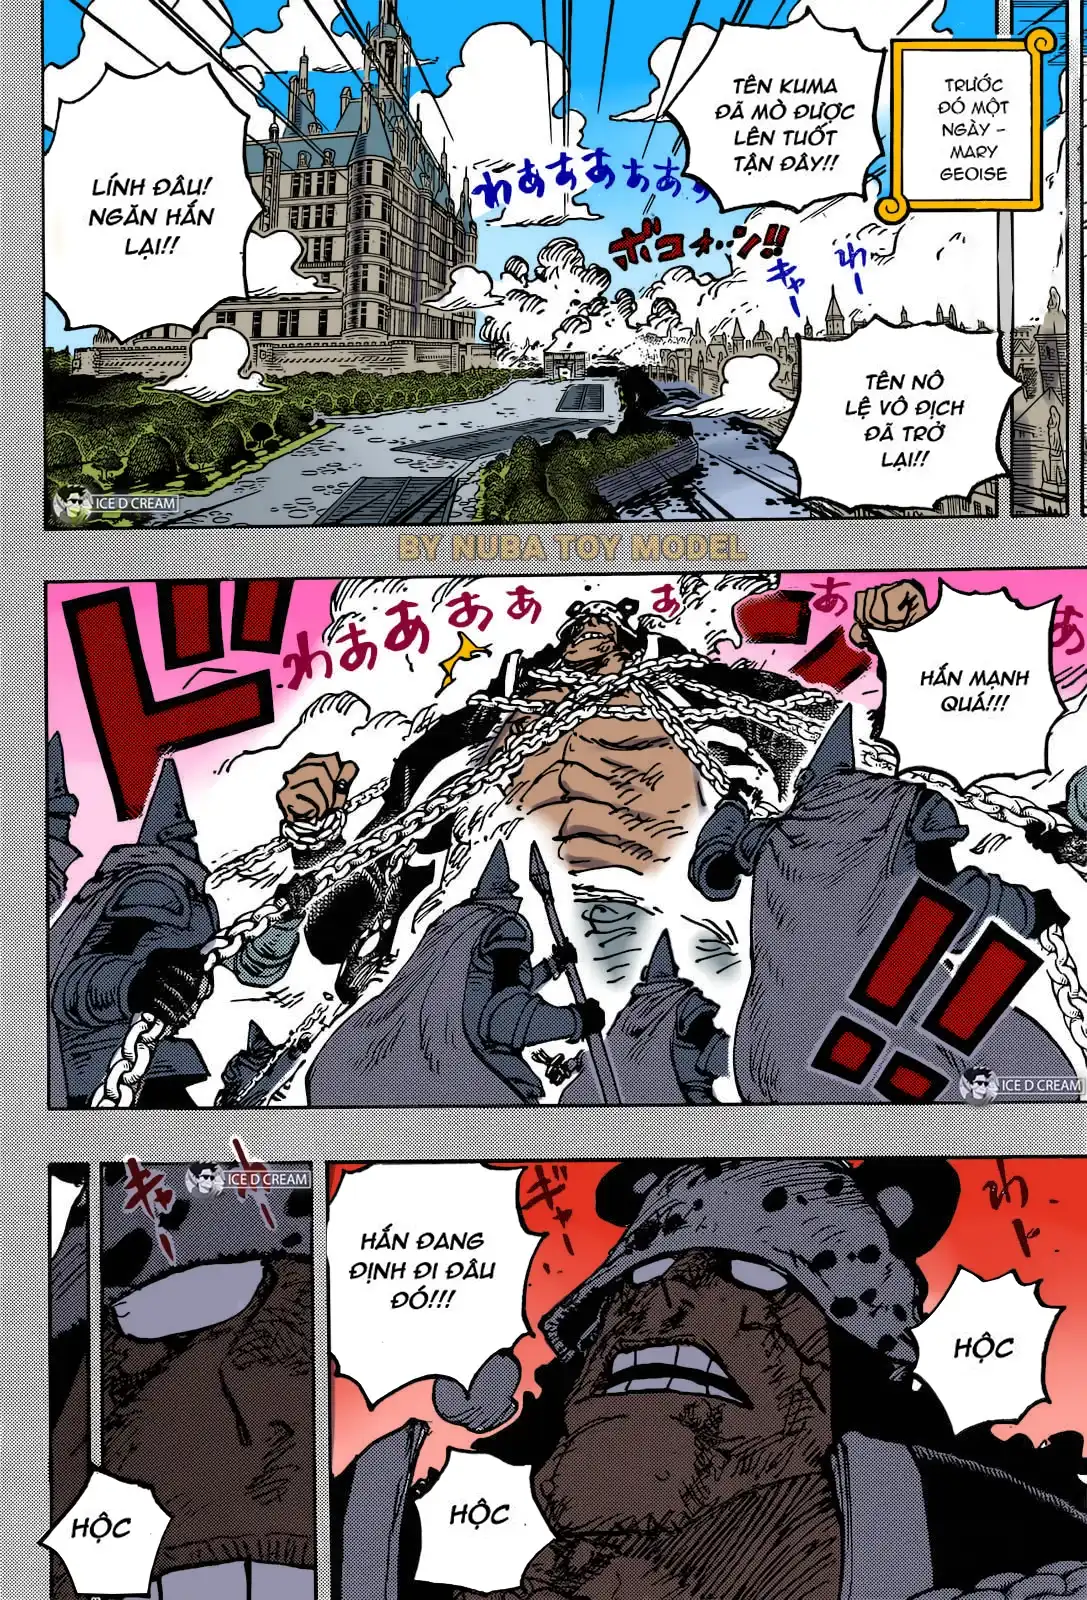 one Piece Chương 1092 bắt đầu bằng đoạn hồi tưởng về ngày hôm trước ở Mary Geoise , nơi Kuma đã hành quân lên thành phố. Một số người lính đang cố gắng ngăn cản anh ta, nhưng họ gặp khó khăn khi anh ta cố gắng thoát ra và đi đâu đó.